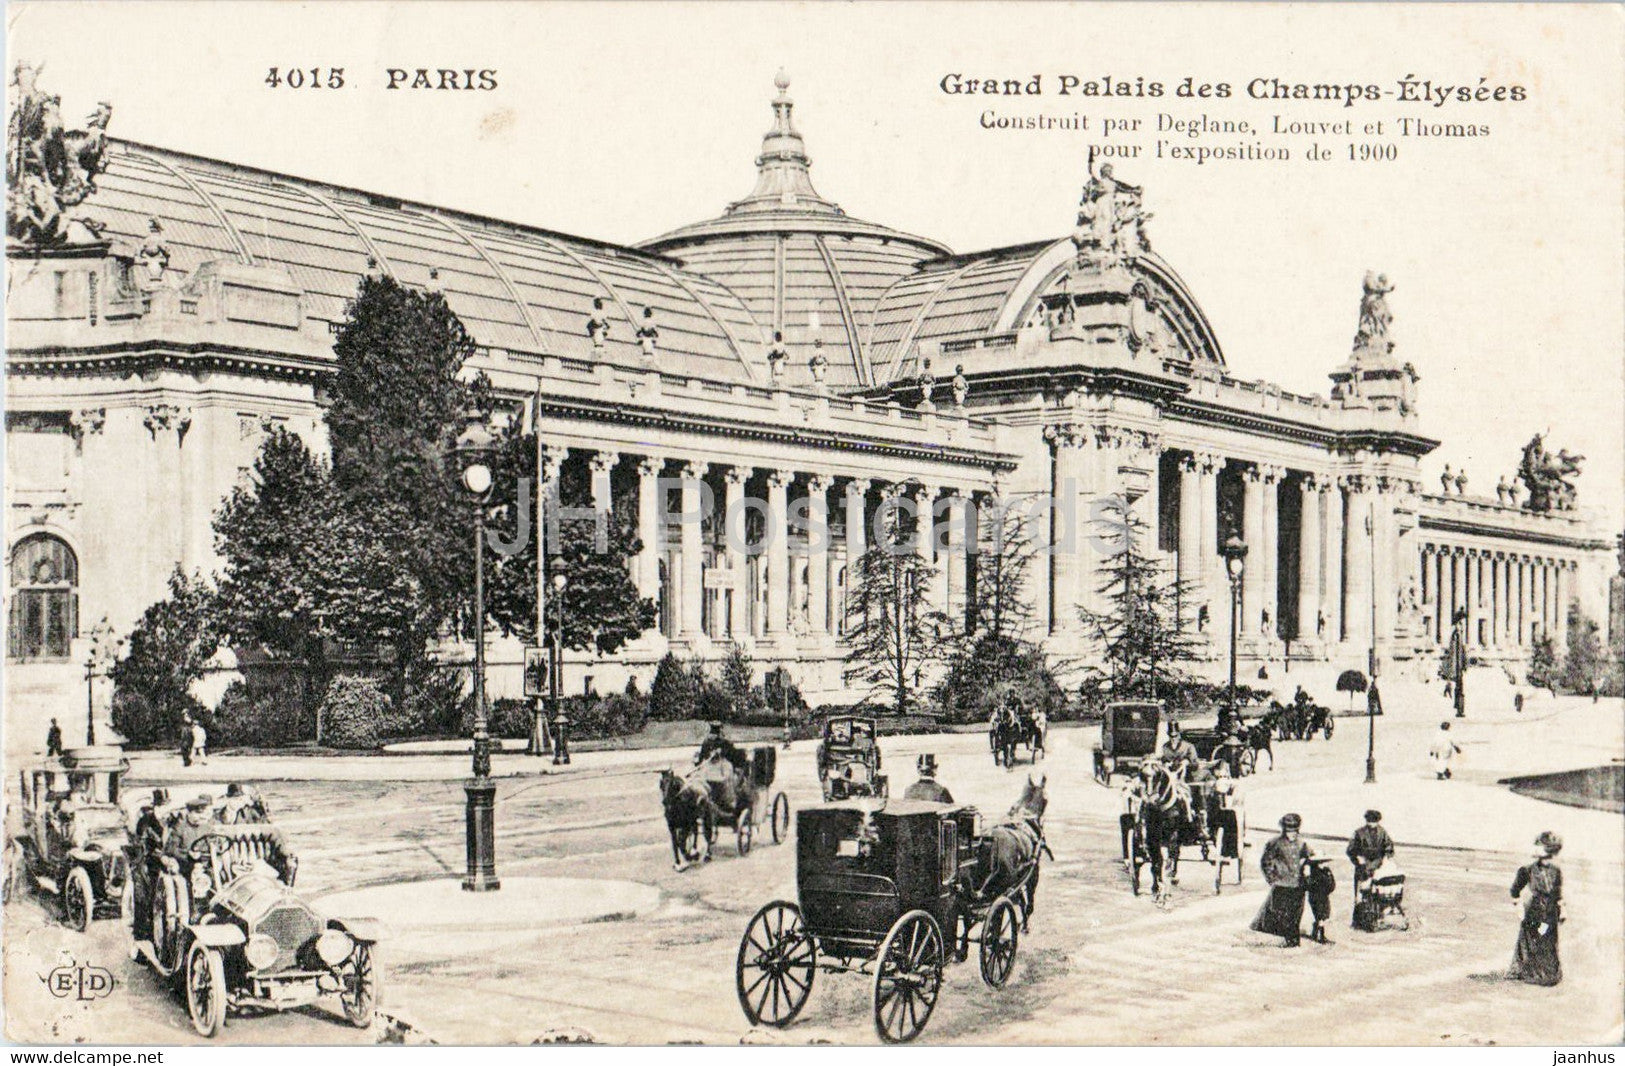 Paris - Grand Palais des Champs Elysees - car - horse carriage - 4015 - old postcard - France - unused - JH Postcards